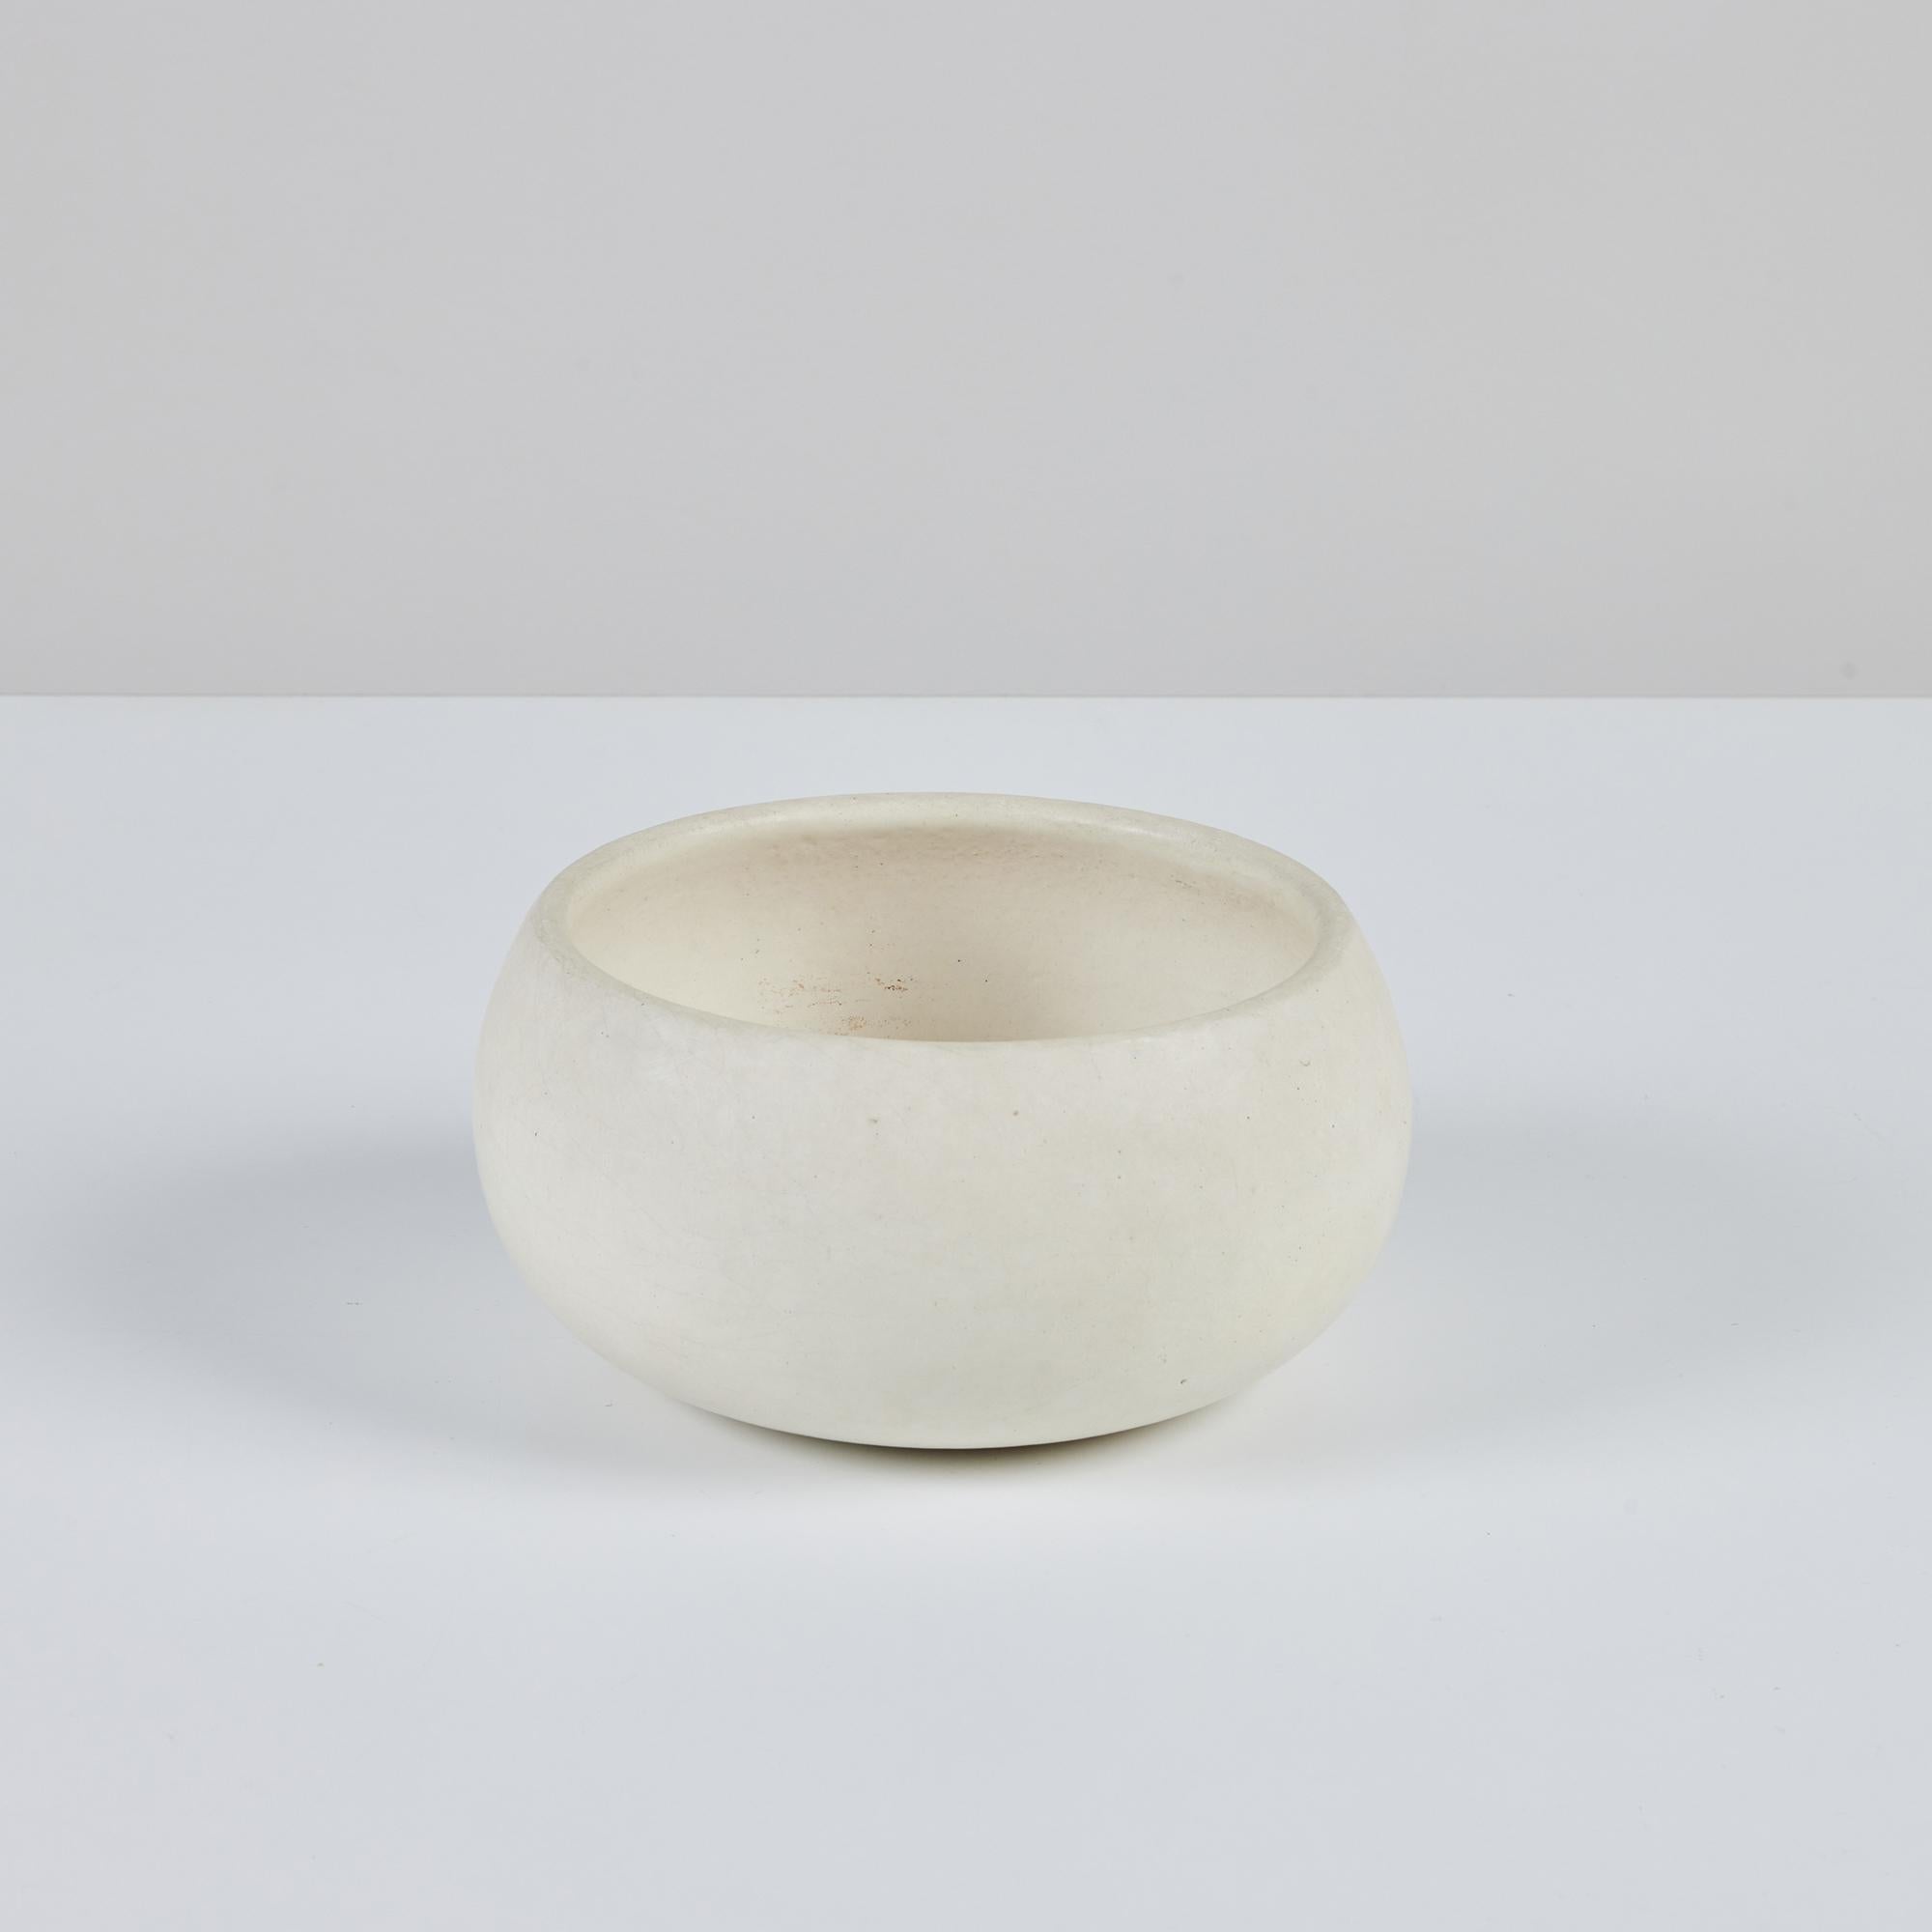 Jardinière en biscuit blanc de John Follis pour Architectural Pottery, USA. Cet exemple présente une forme arrondie et douce. Une taille parfaite pour une table ou une étagère.

Dimensions
7